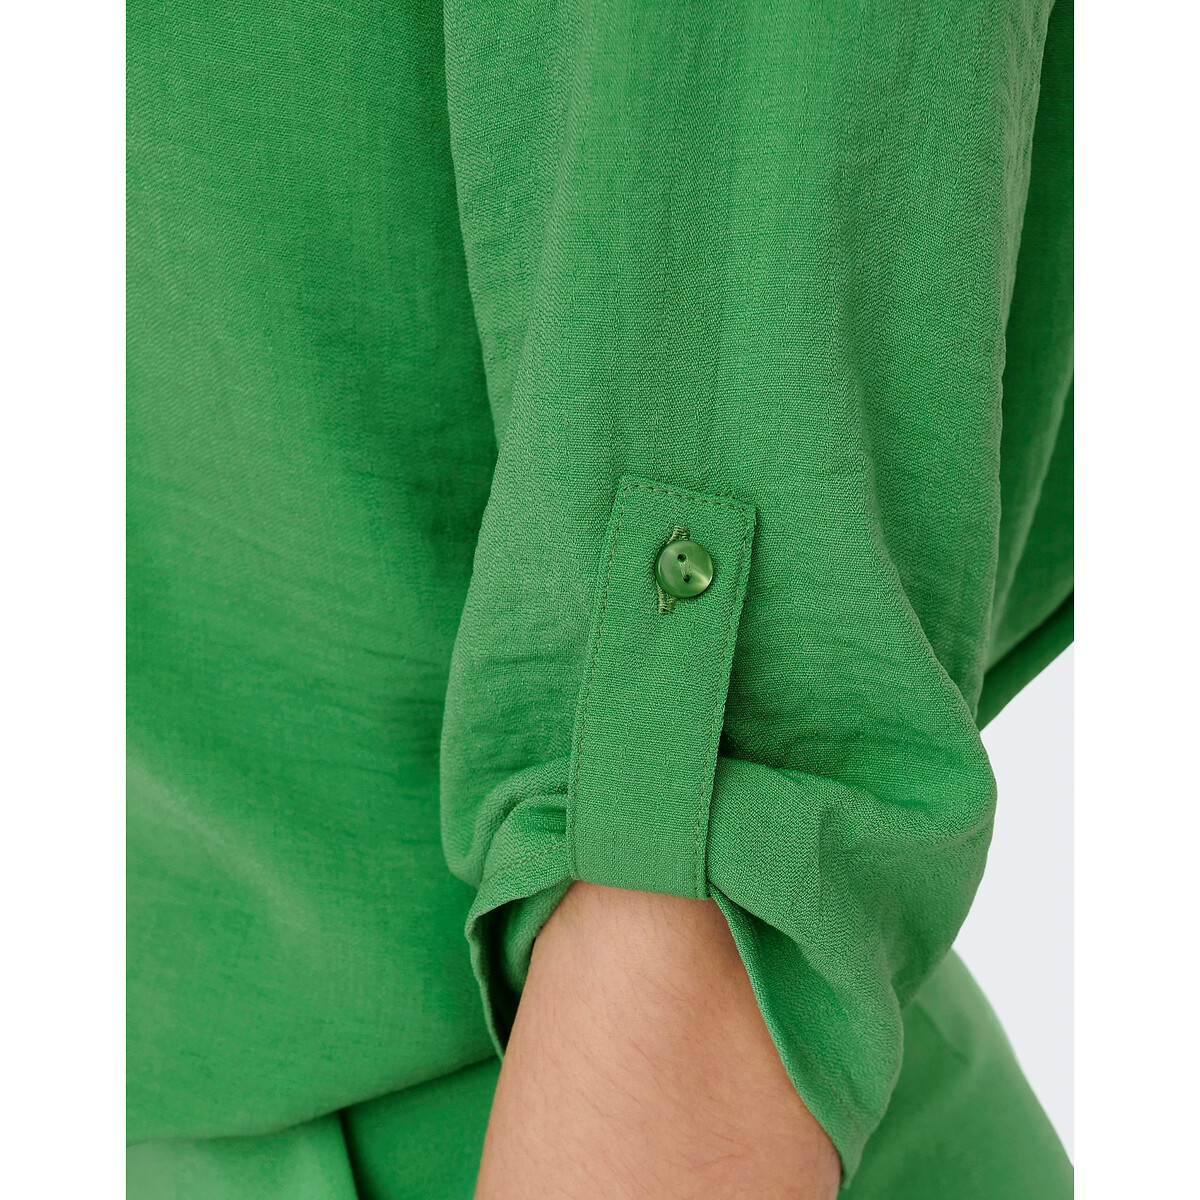 Блузка С рукавами 34 и V-образным вырезом 36 (FR) - 42 (RUS) зеленый LaRedoute, размер 36 (FR) - 42 (RUS) Блузка С рукавами 34 и V-образным вырезом 36 (FR) - 42 (RUS) зеленый - фото 3